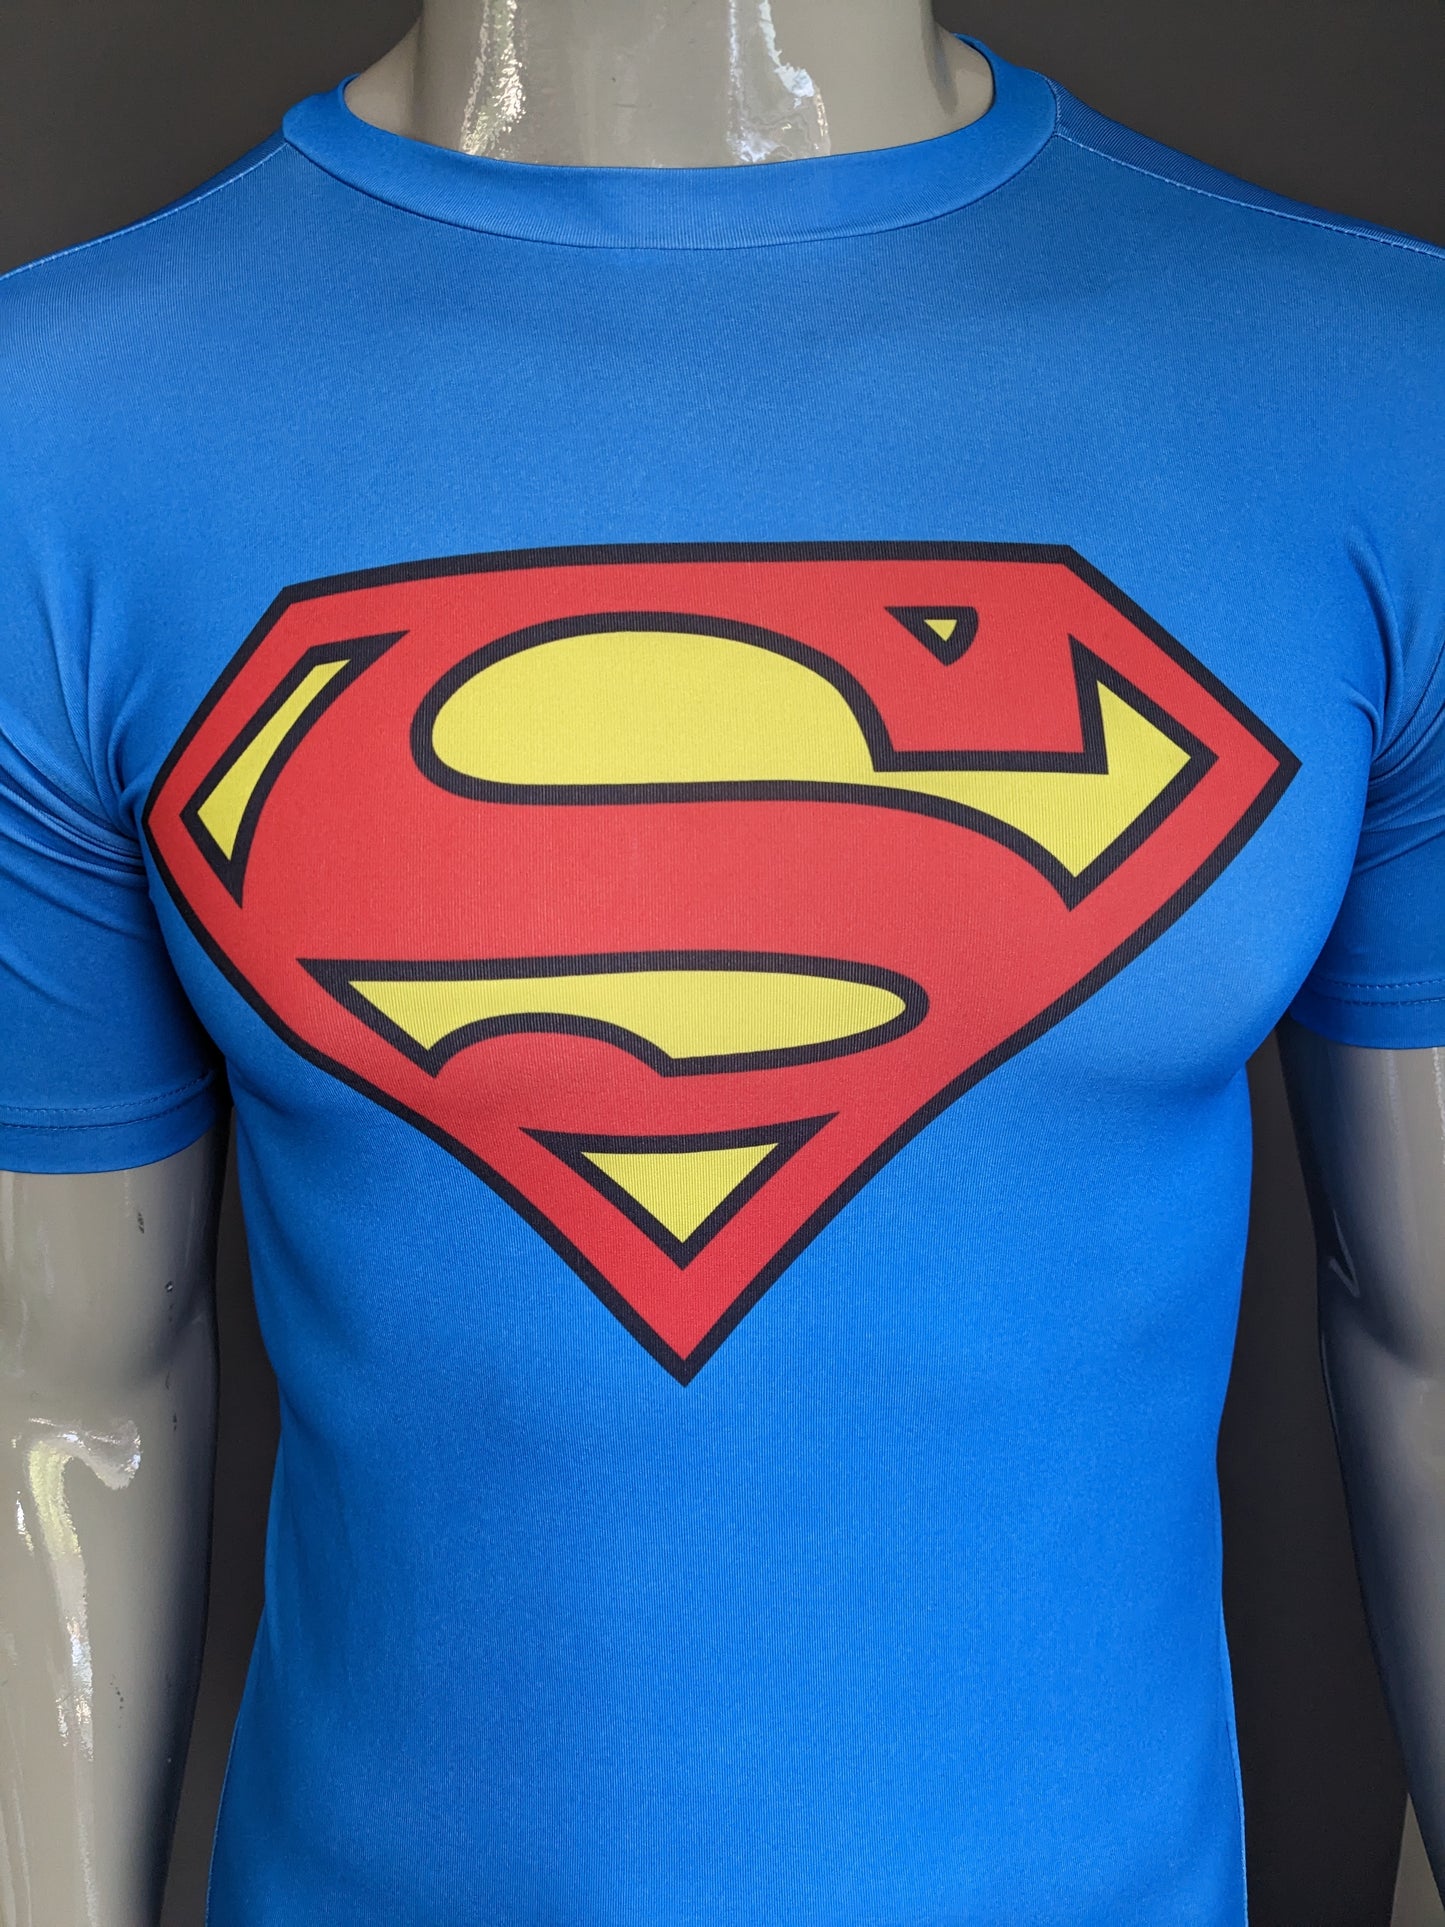 Superman -Shirt. Blaurot gelb gefärbt. Größe S. Stretch.